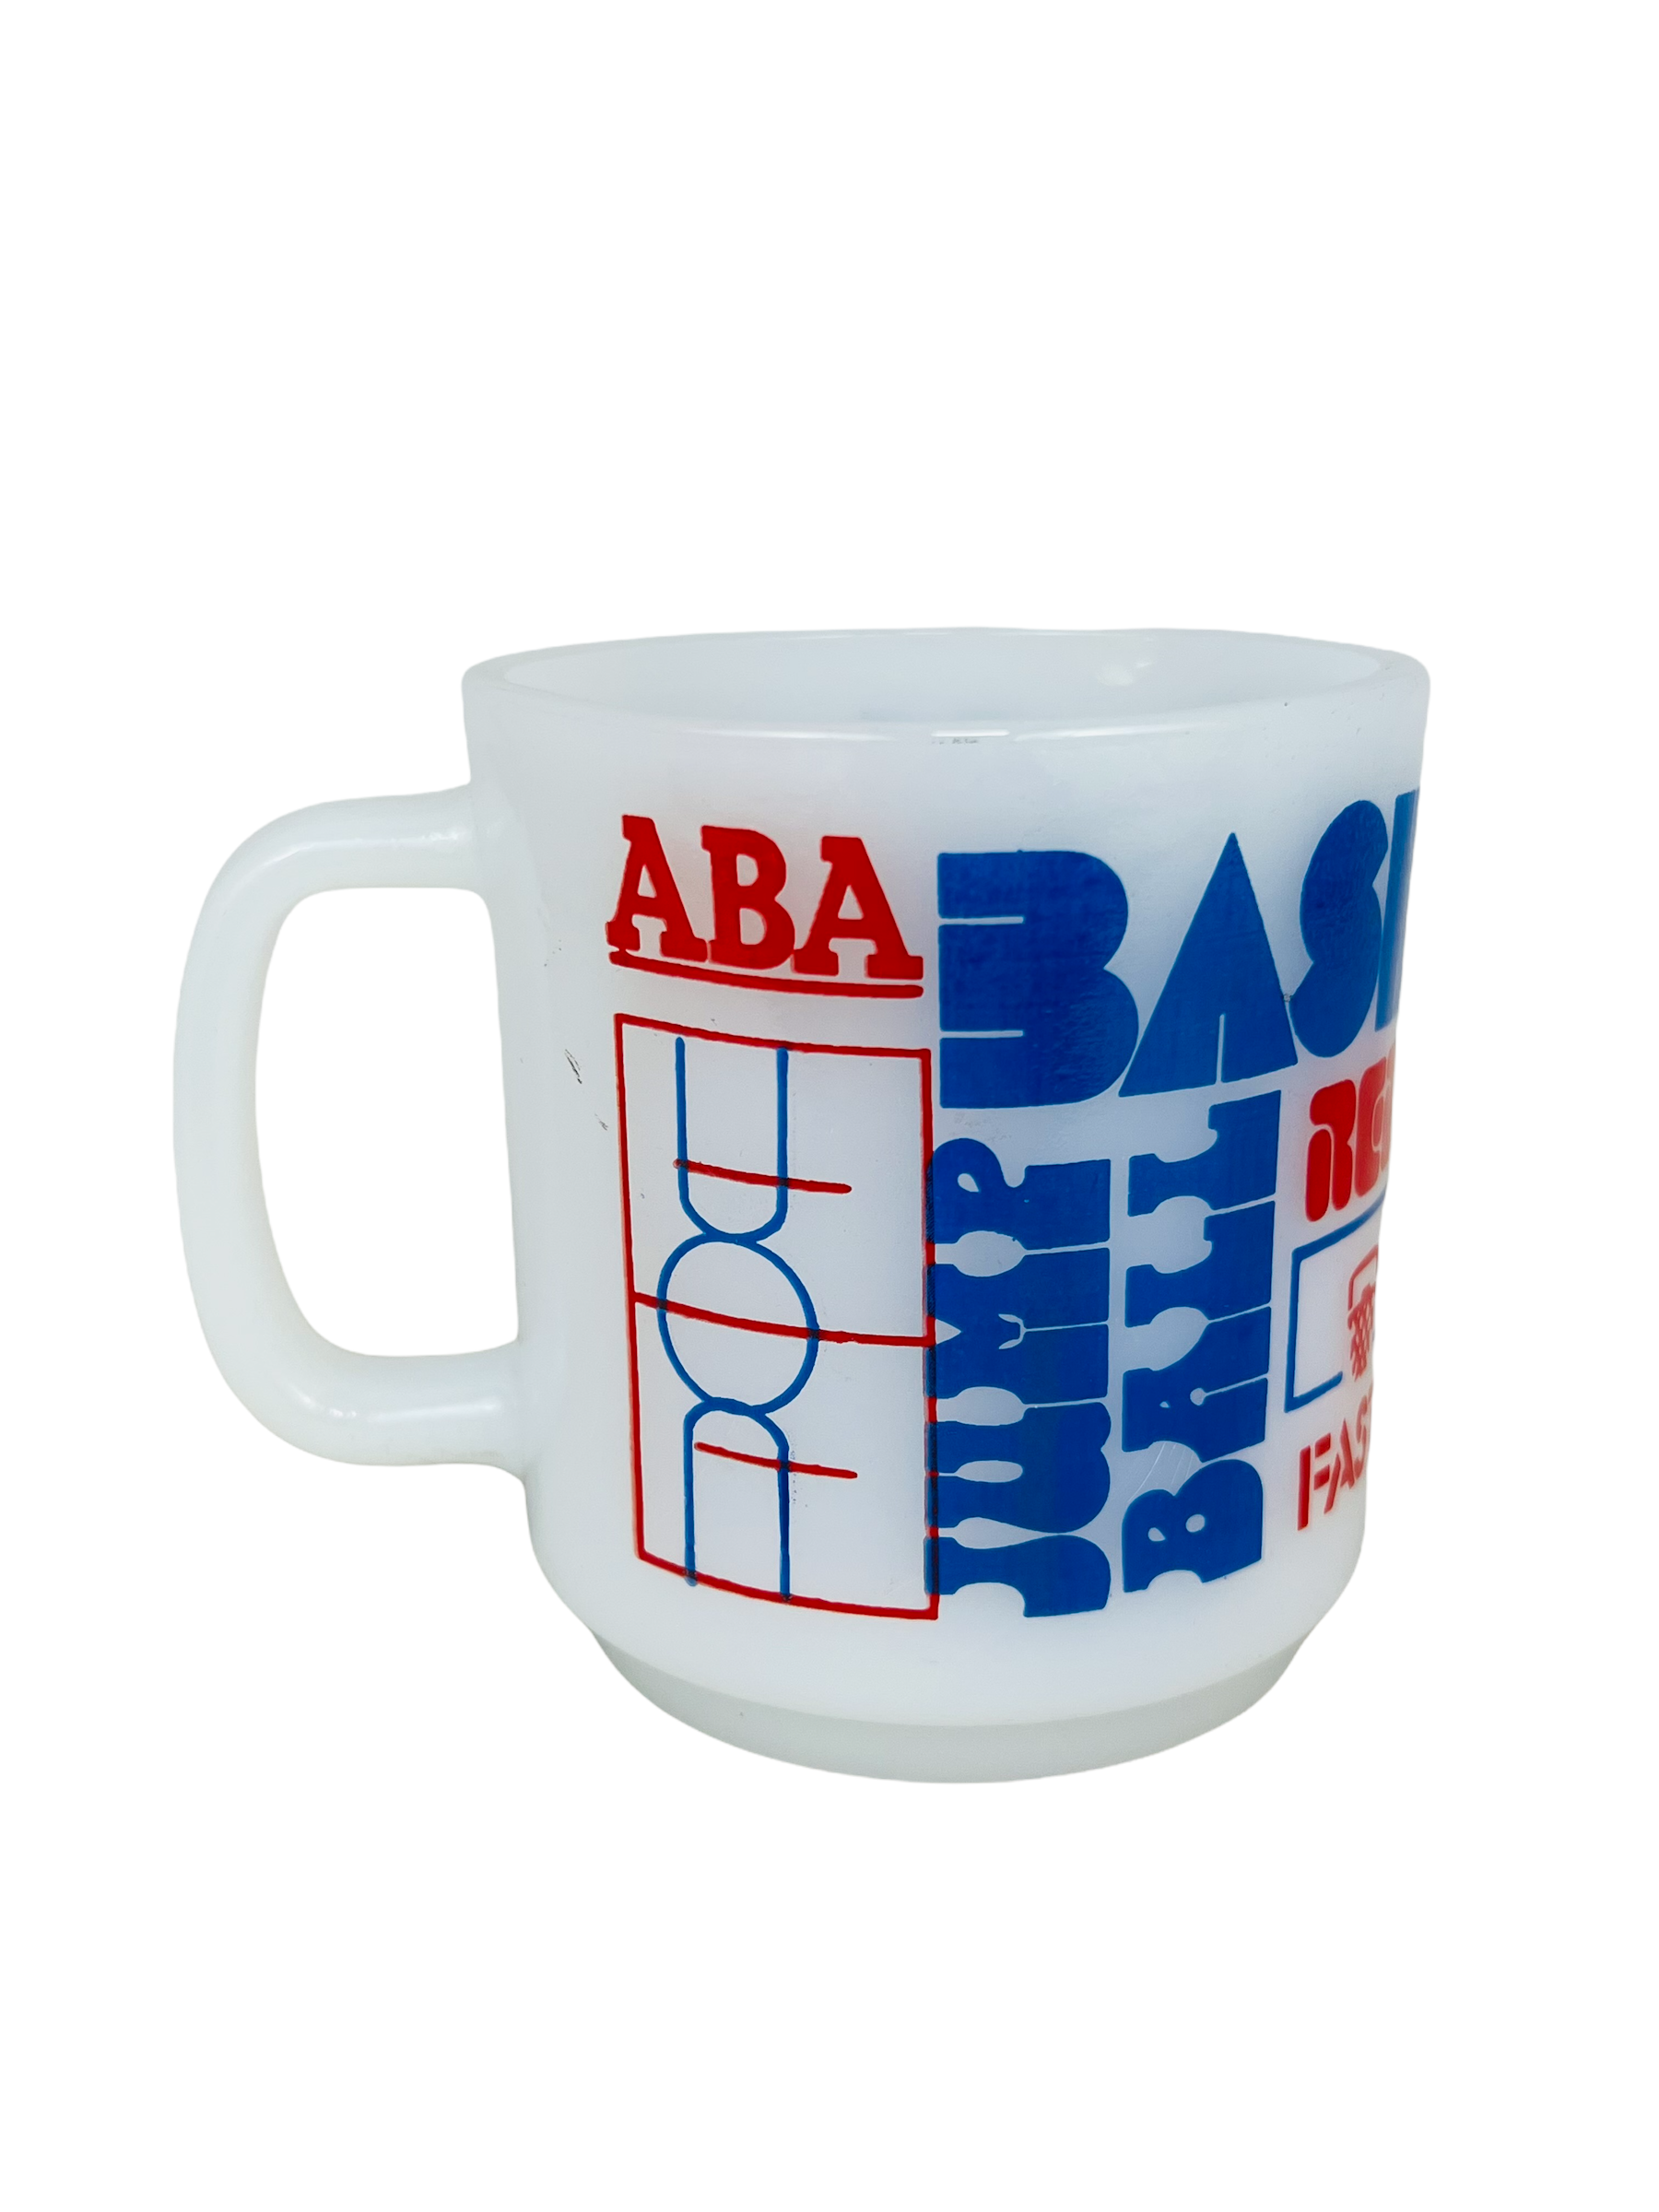 ABA BASKETBALL VINTAGE 1970'S GLASS COFFEE MUG - Bucks County Baseball Co.